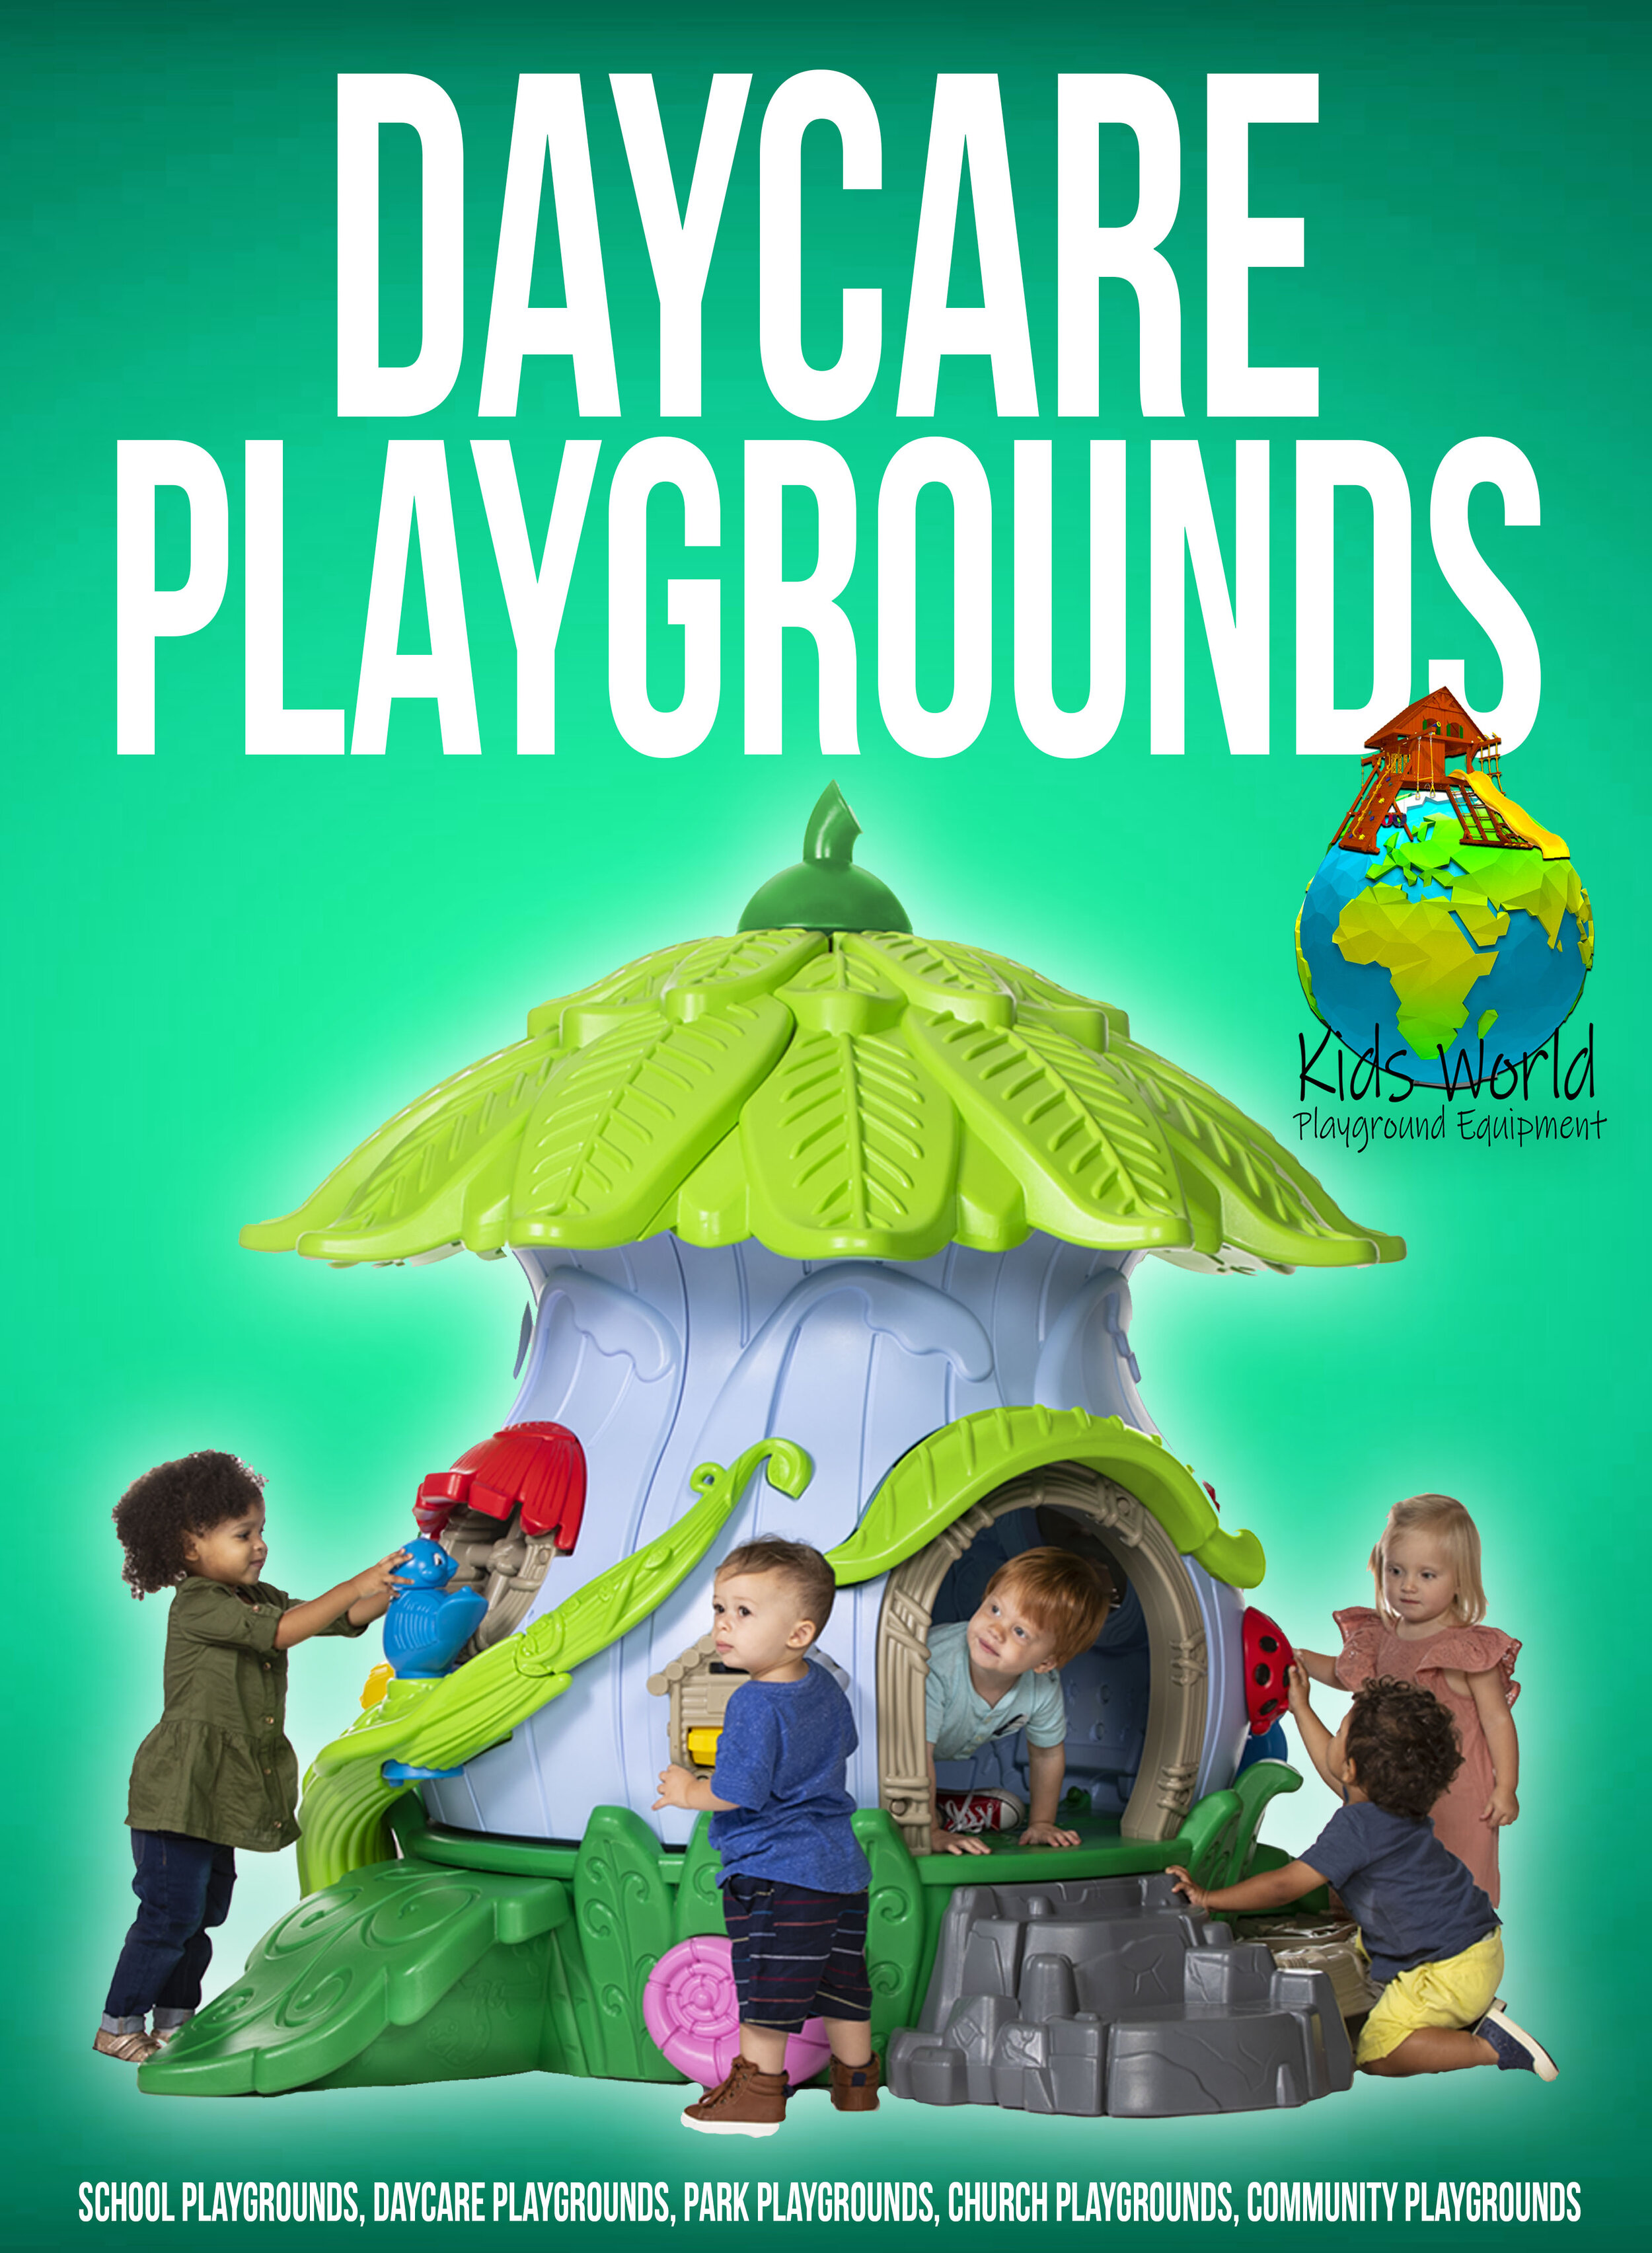 Kids World Playground Equipment Facebook Ad 9.jpg